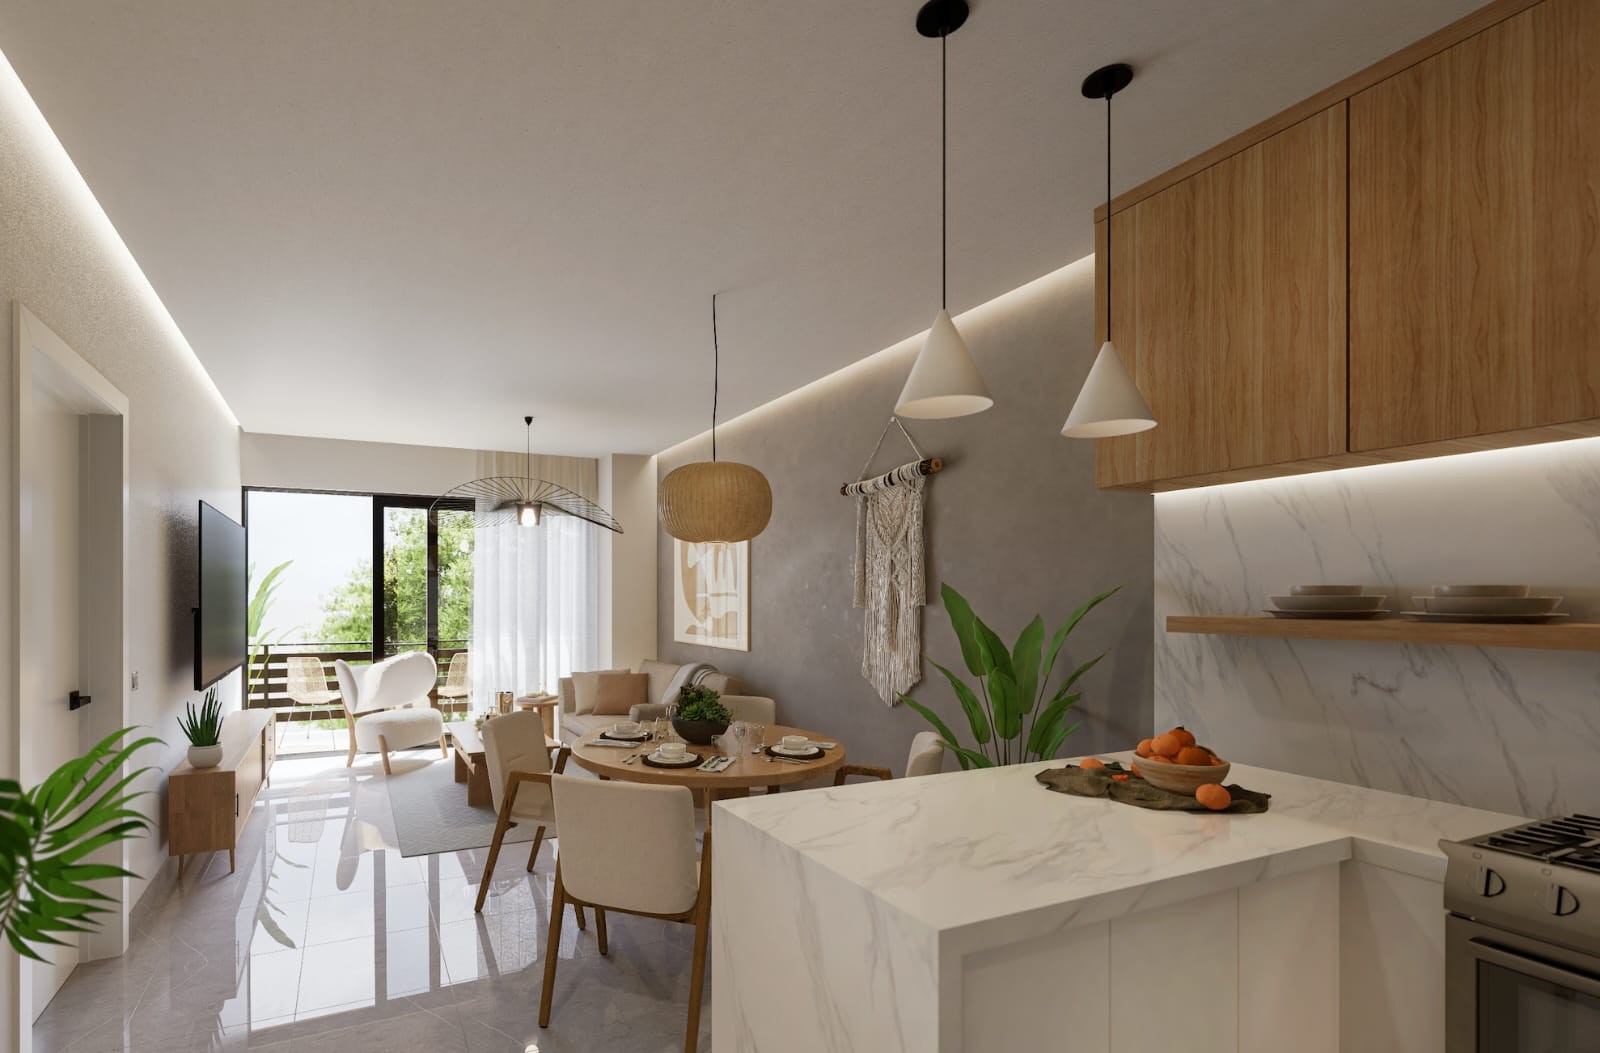 apartamentos - Proyecto de apartamentos en Arroyo Hondo Viejo, D. N.
Cercano a Ikea y 360 5